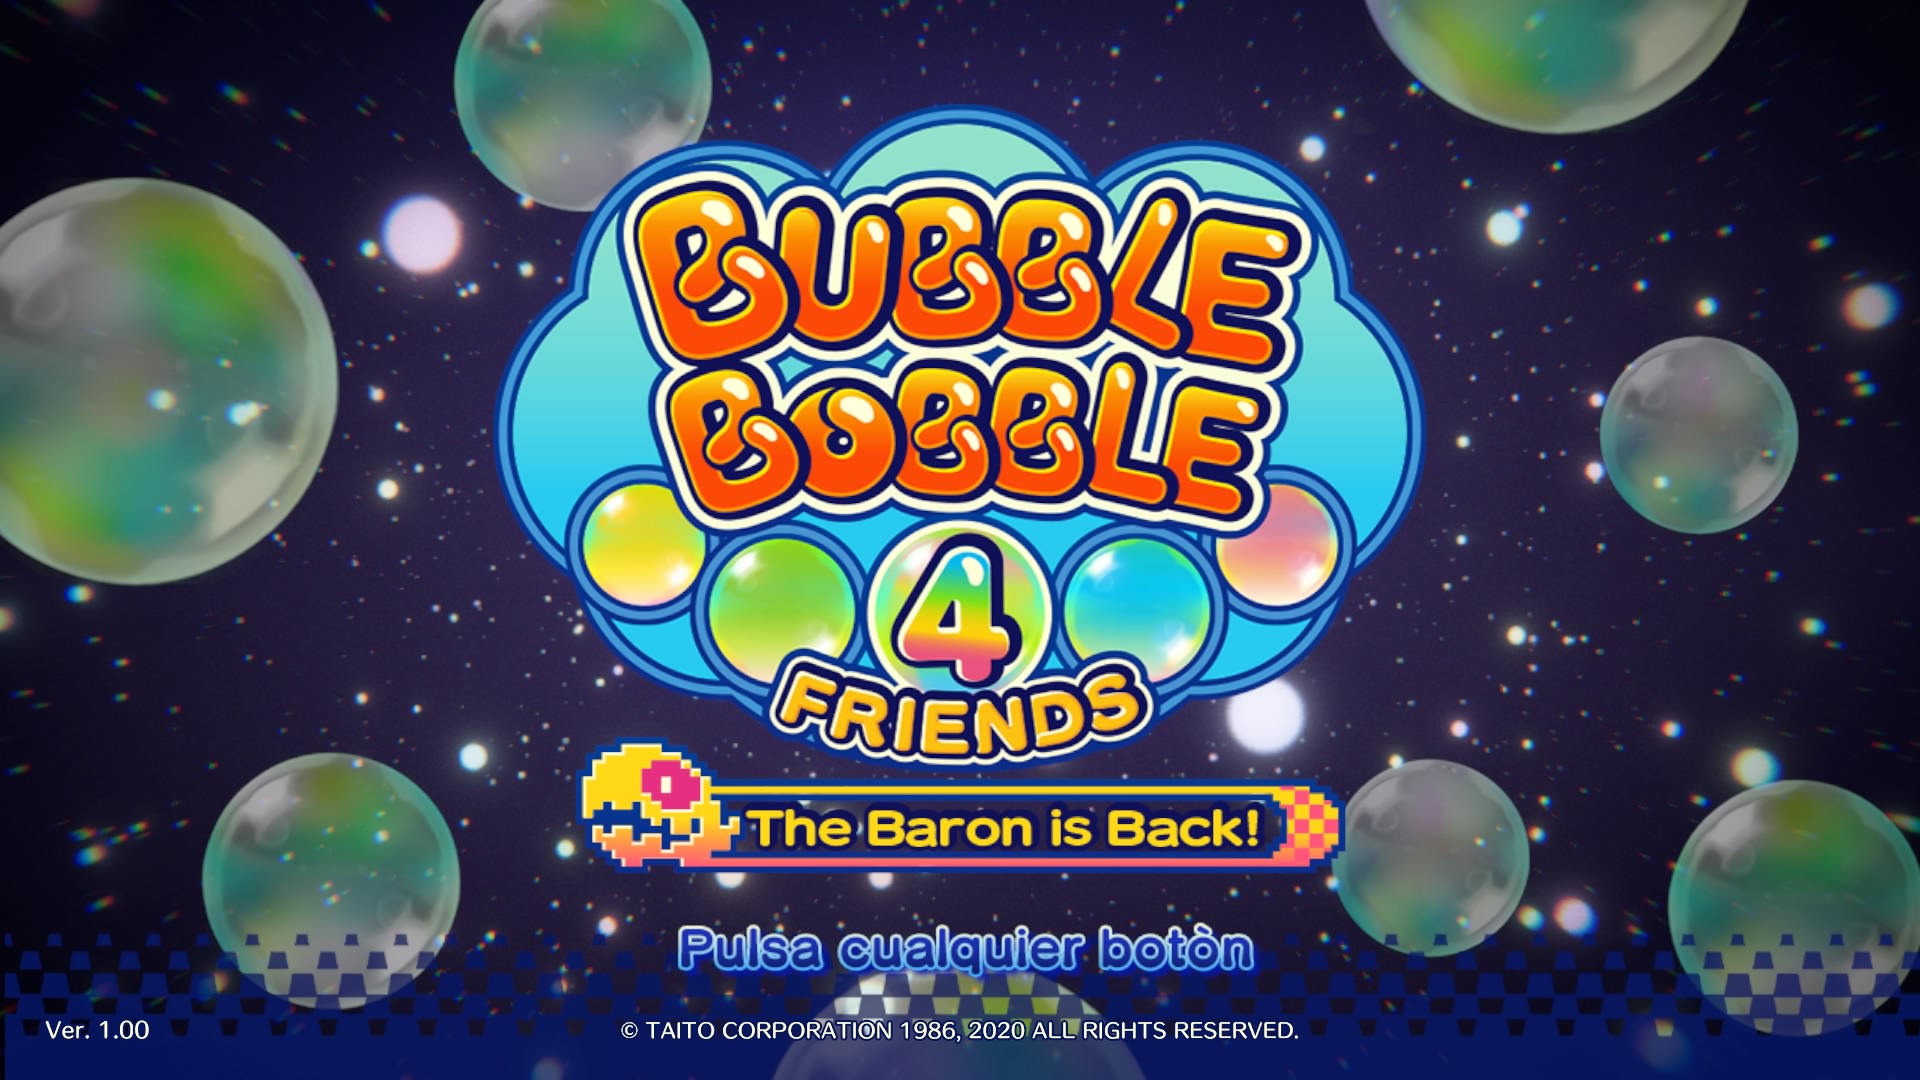 [Análisis] Bubble Bobble 4 Friends: The Baron is Back!